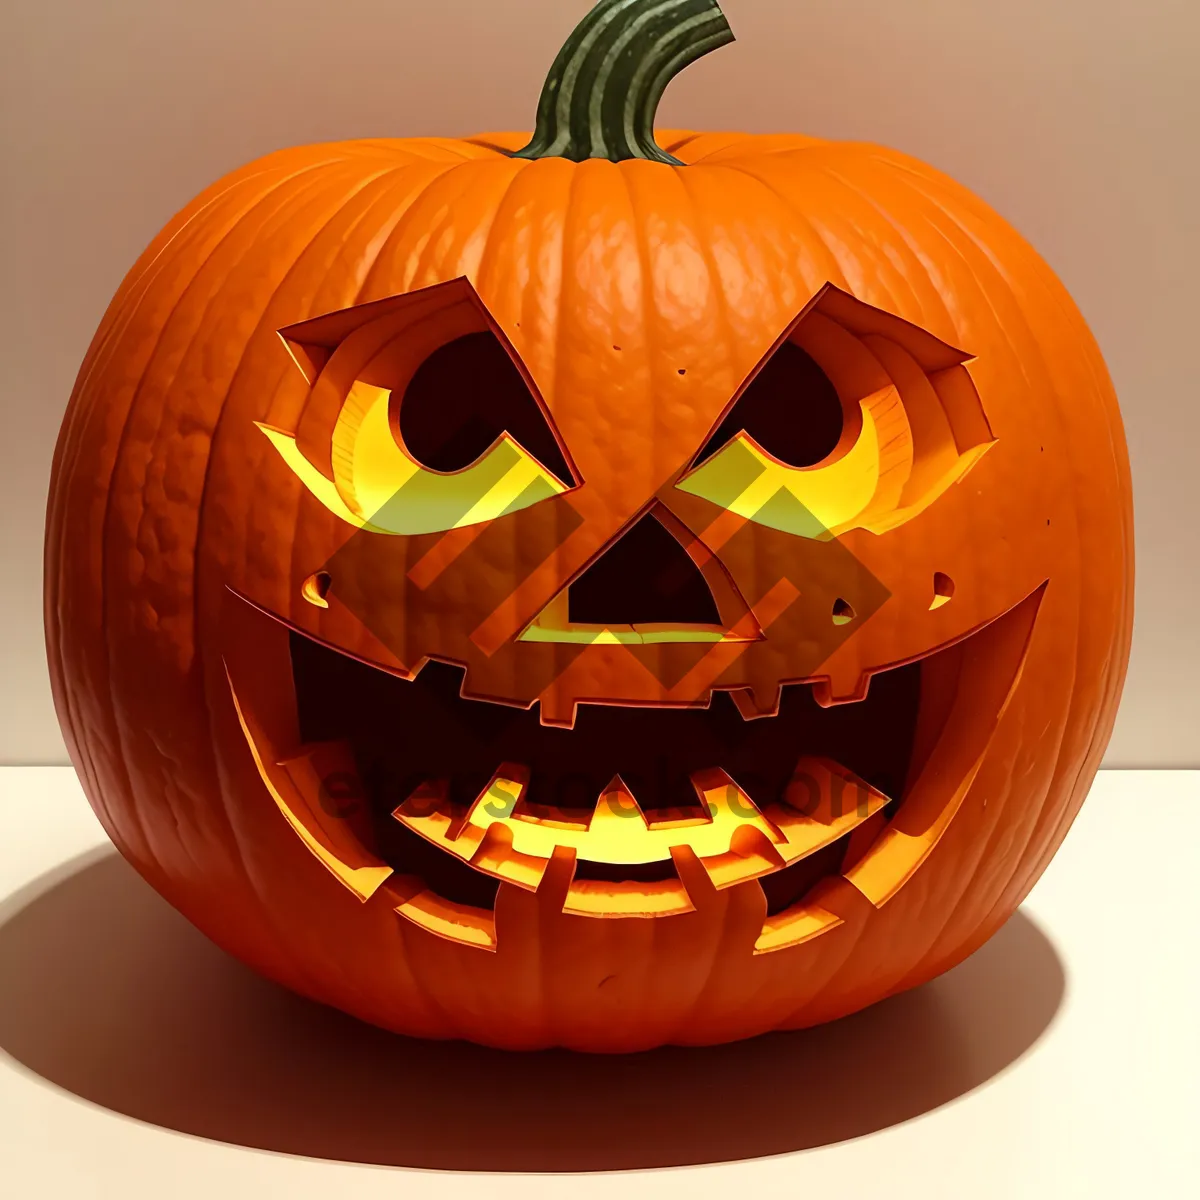 Picture of Spooky Pumpkin Lantern Glowing in the Dark